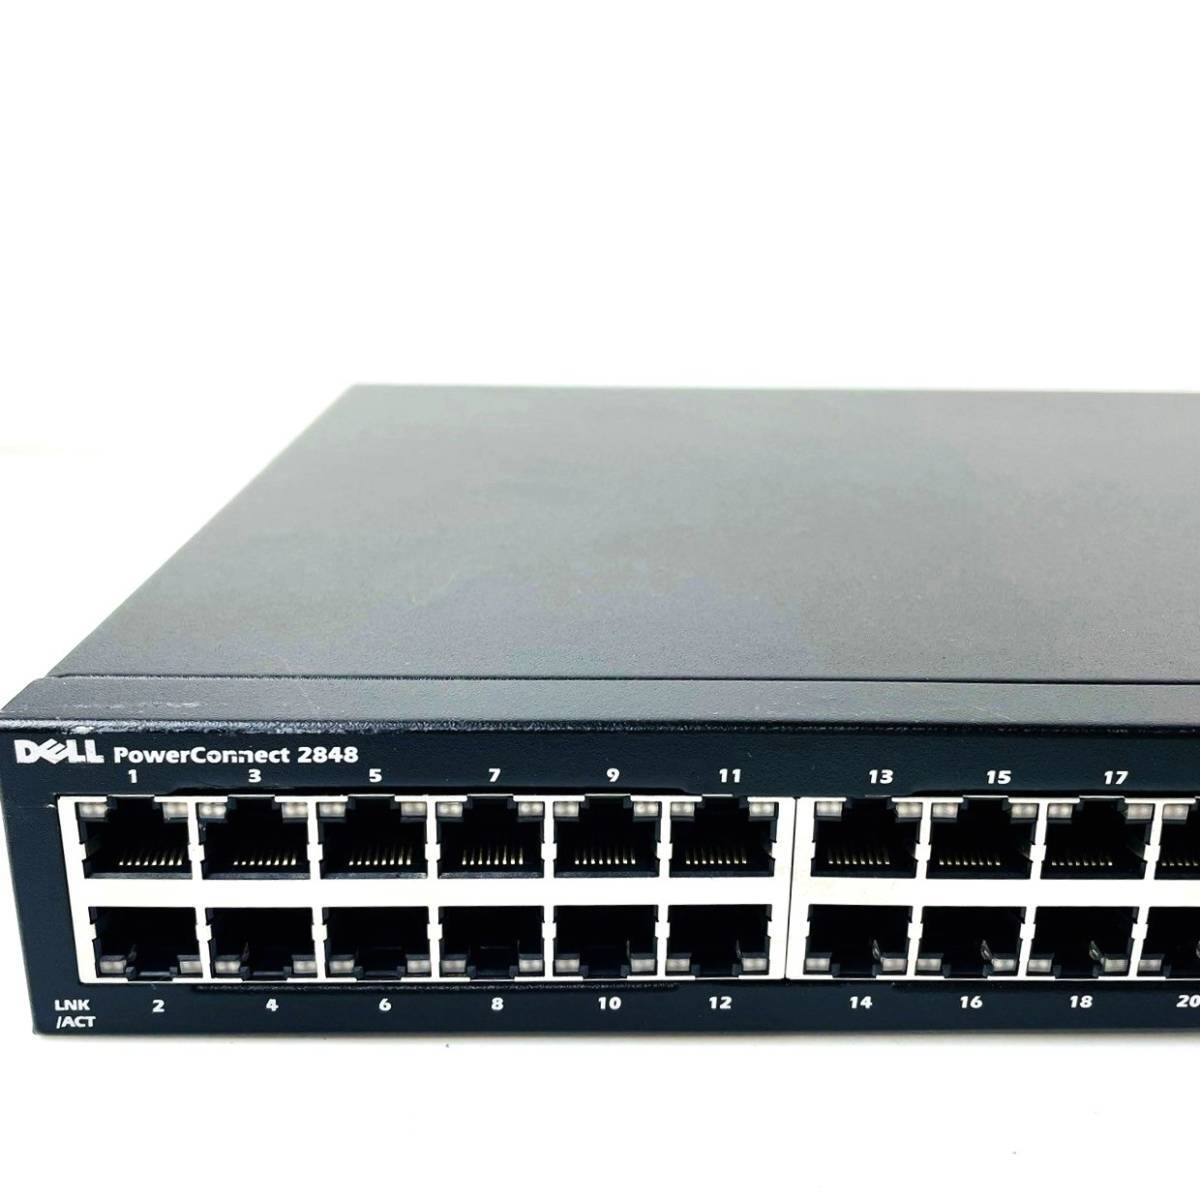 □24【通電OK】DELL PowerConnect 2848 スイッチ switch マネージド L2/L3 Gigabit Ethernet (10/100/1000) 1U ブラック 黒 デルの画像4